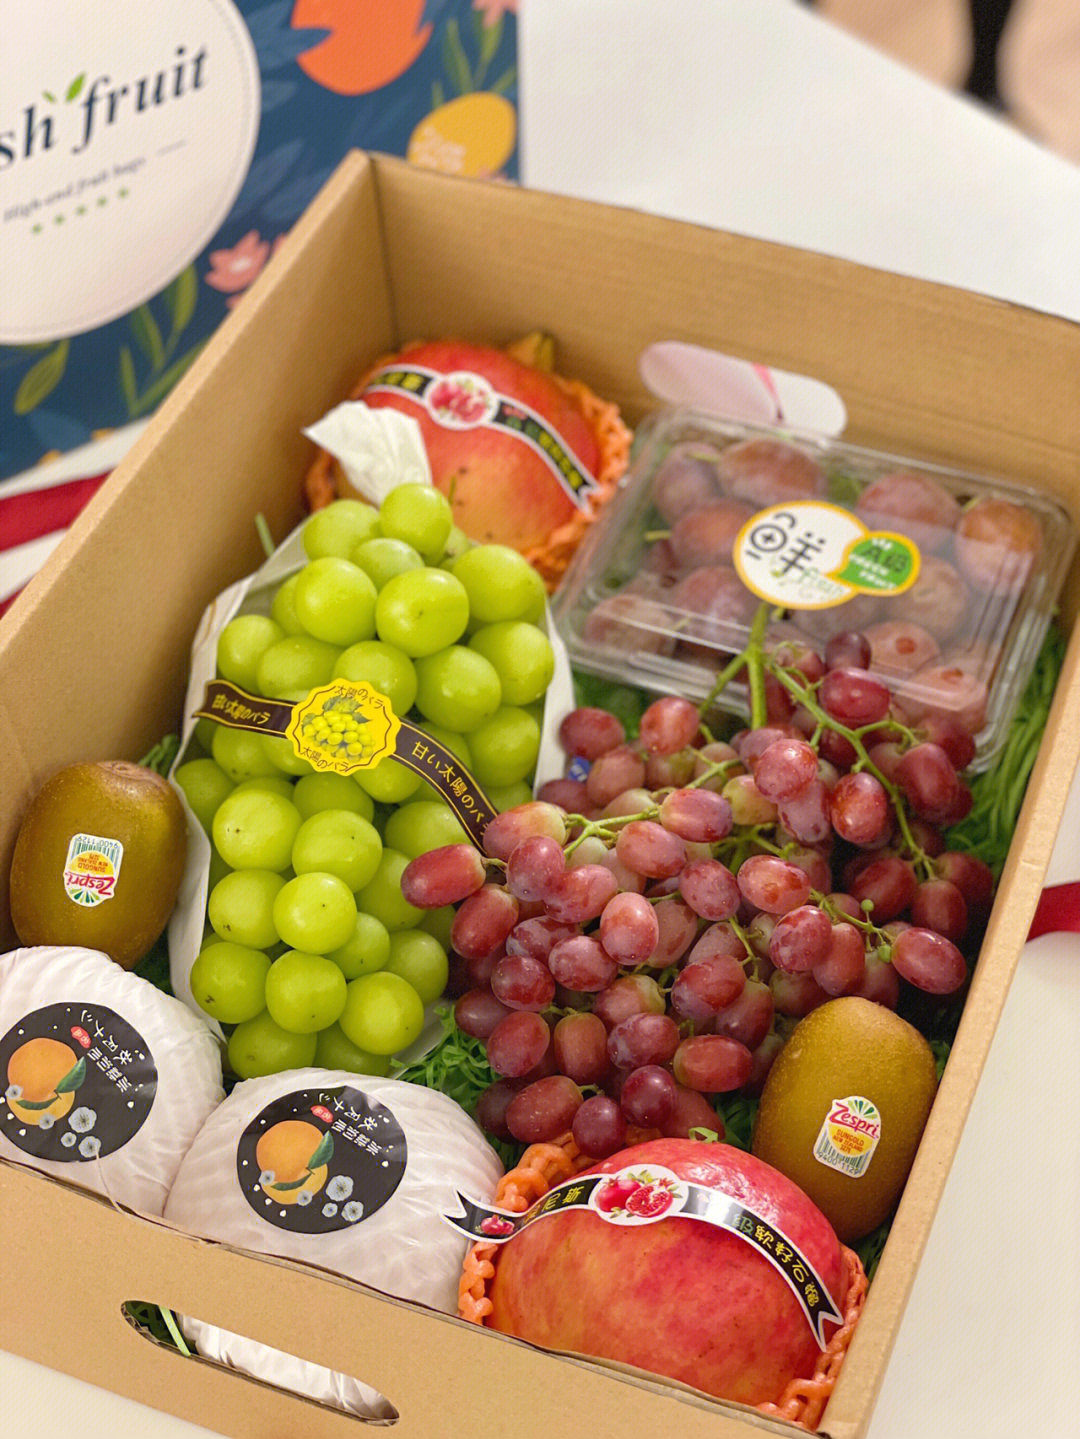 去年给客户搭配了很多不同款式的水果礼盒,各个品种各个礼盒都有,受到